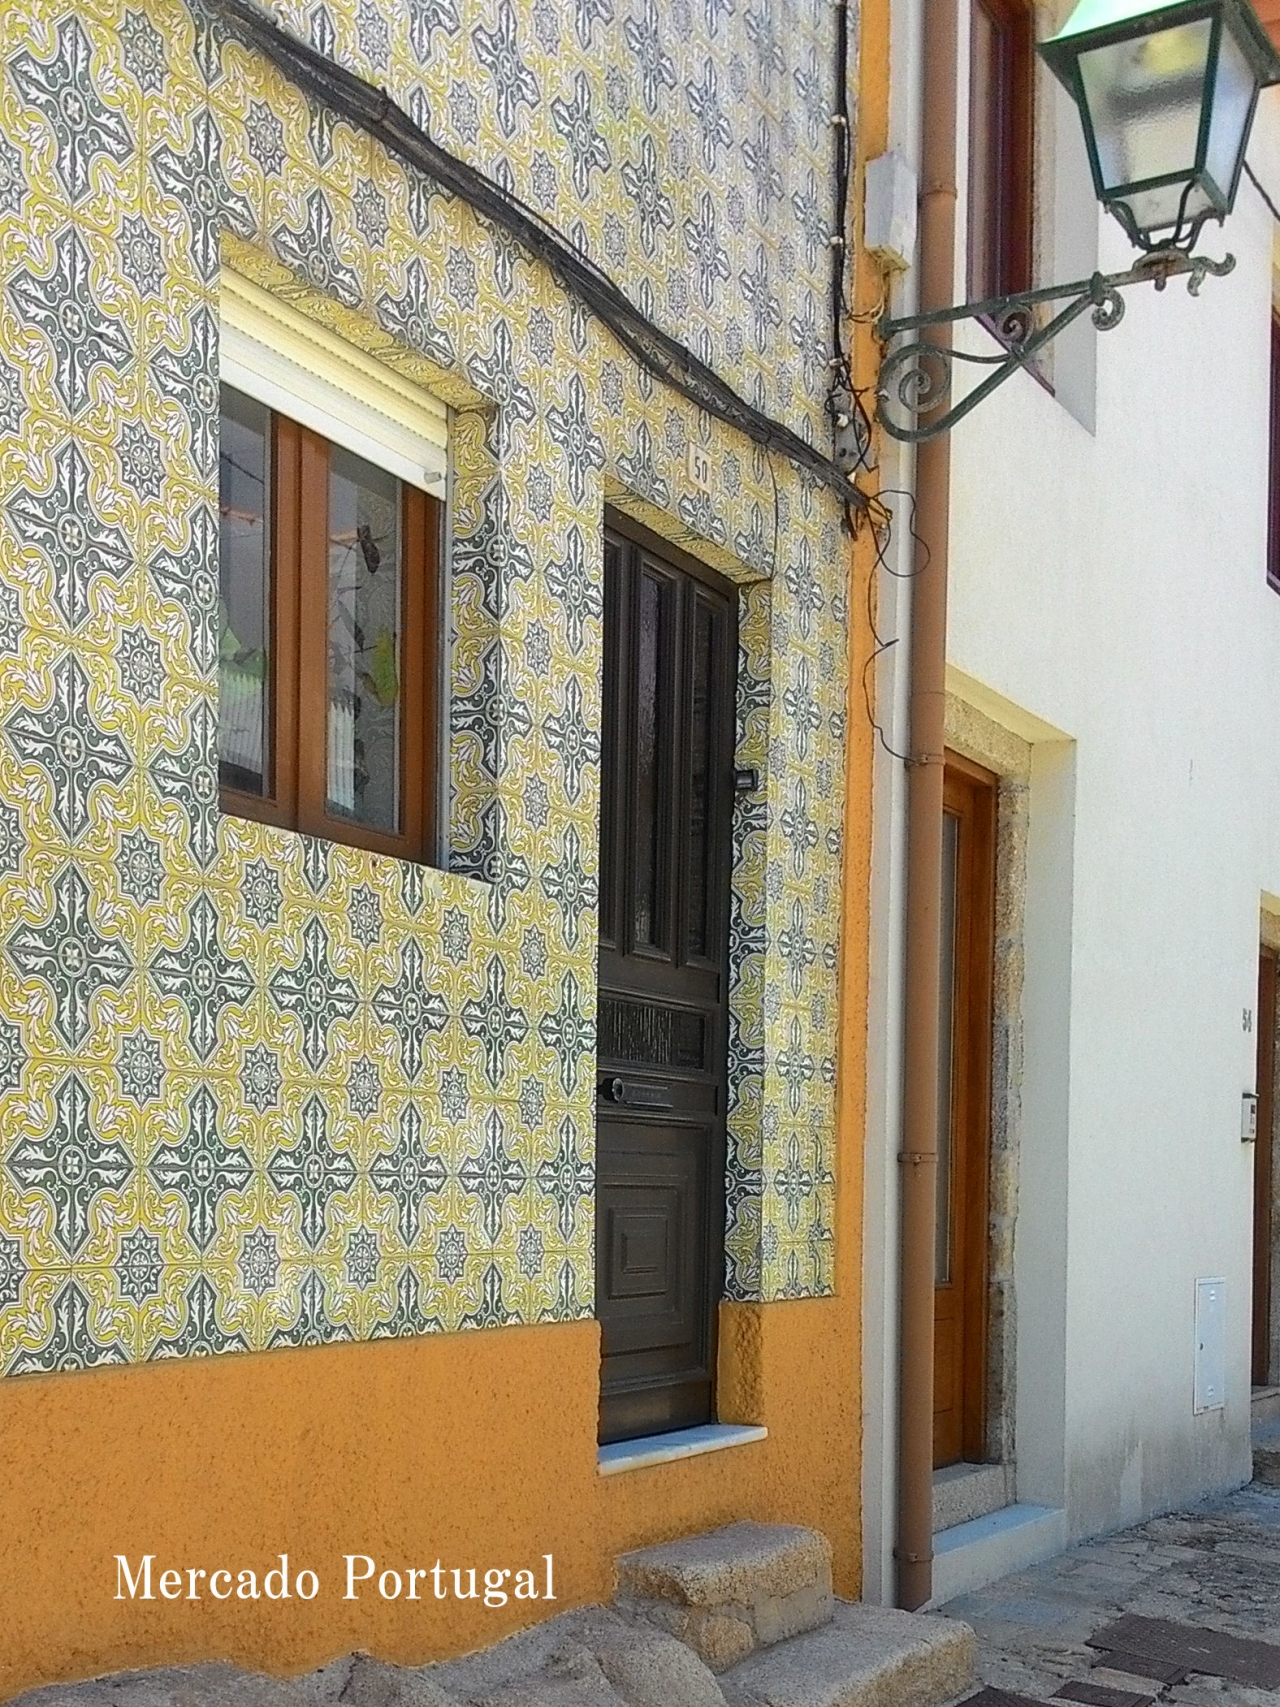 こちらのお家は壁全体をアズレージョで飾っています。